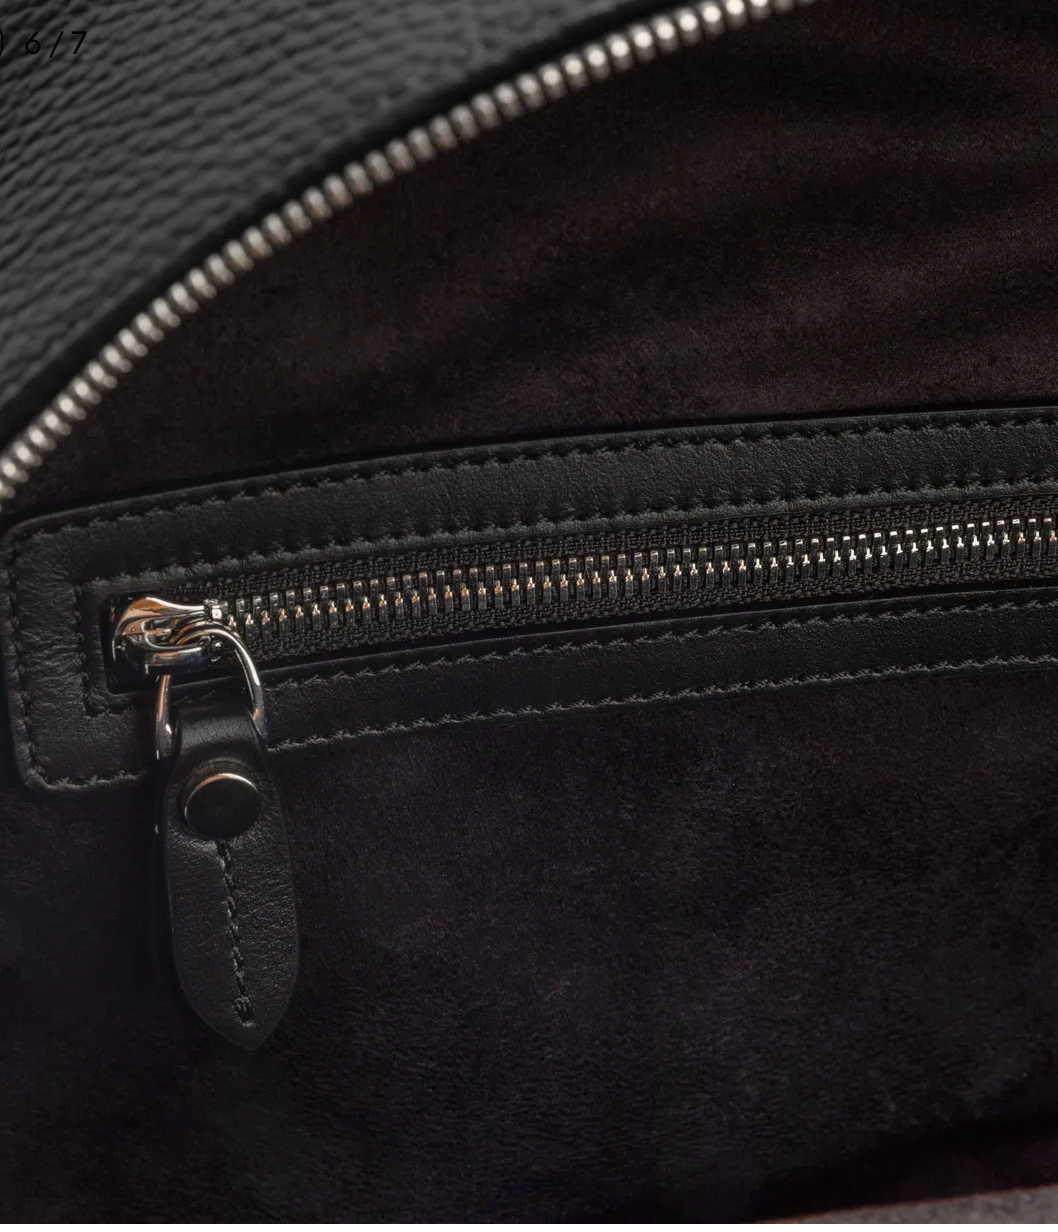 Wine Swirl Elegance Leather Backpack - Bold & Artistic